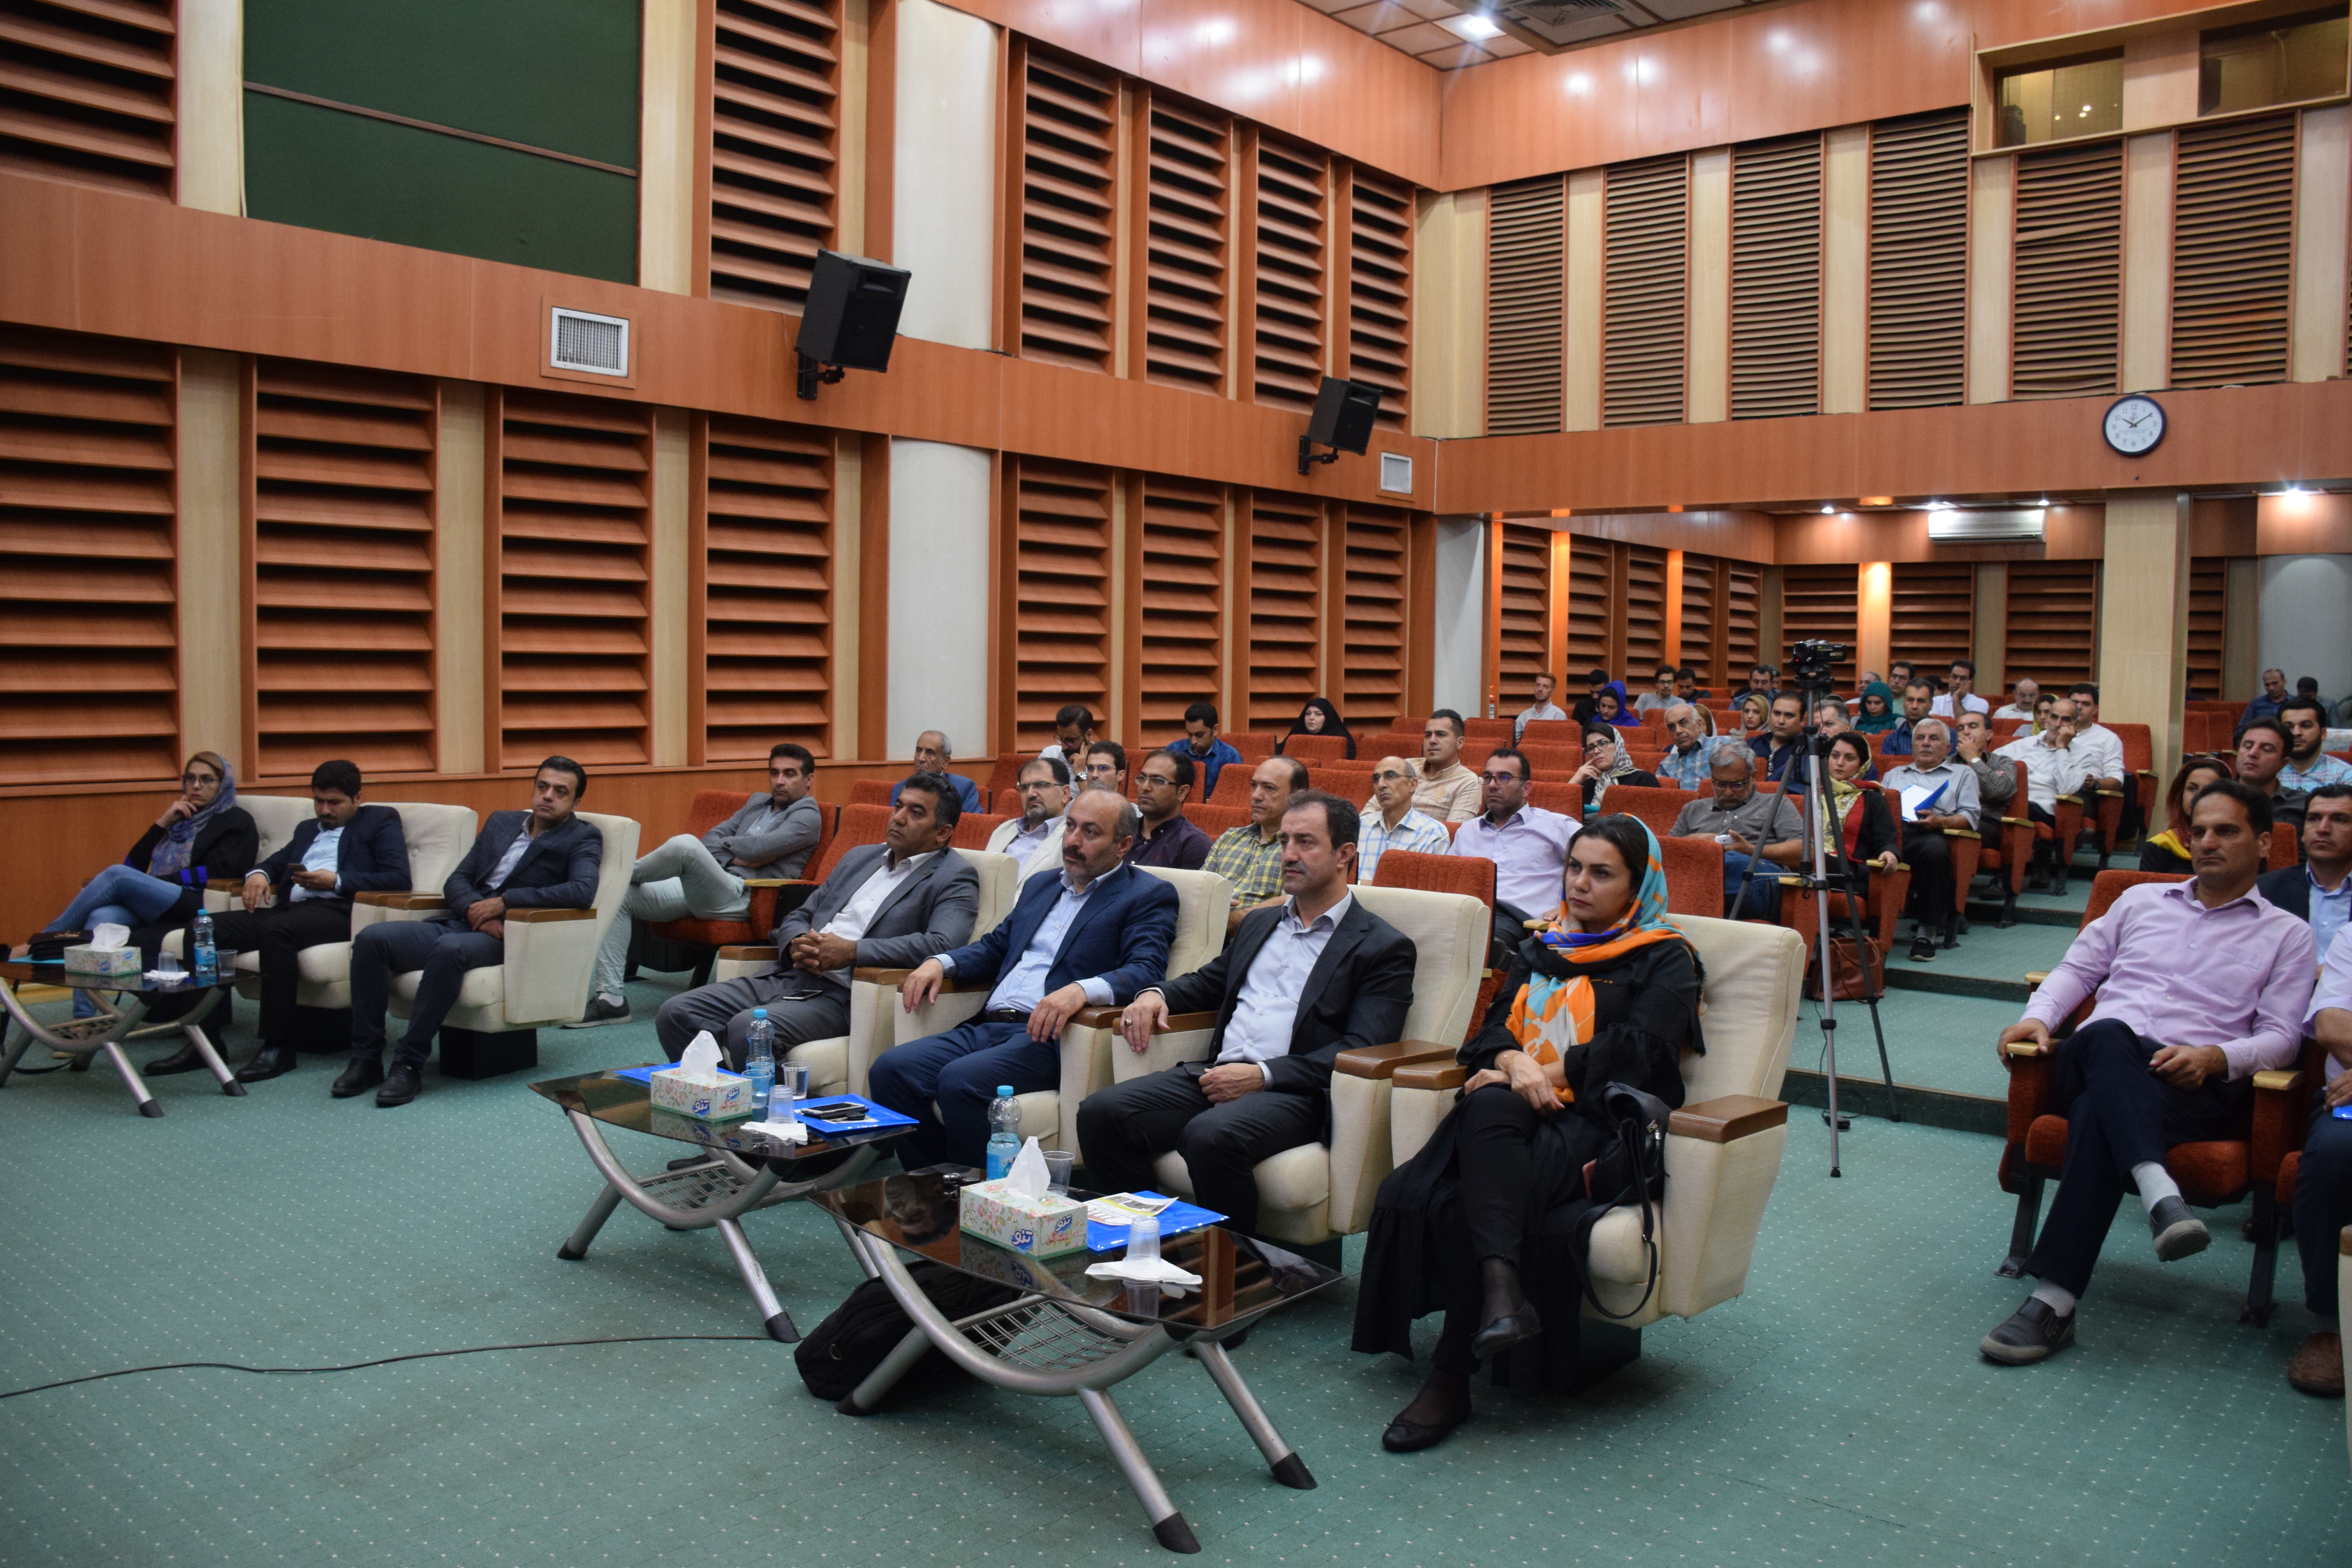 
سمینار آموزشی آشنایی با مصالح نوین و روش های پیشرفته ساختمان در نوشهر برگزار شد